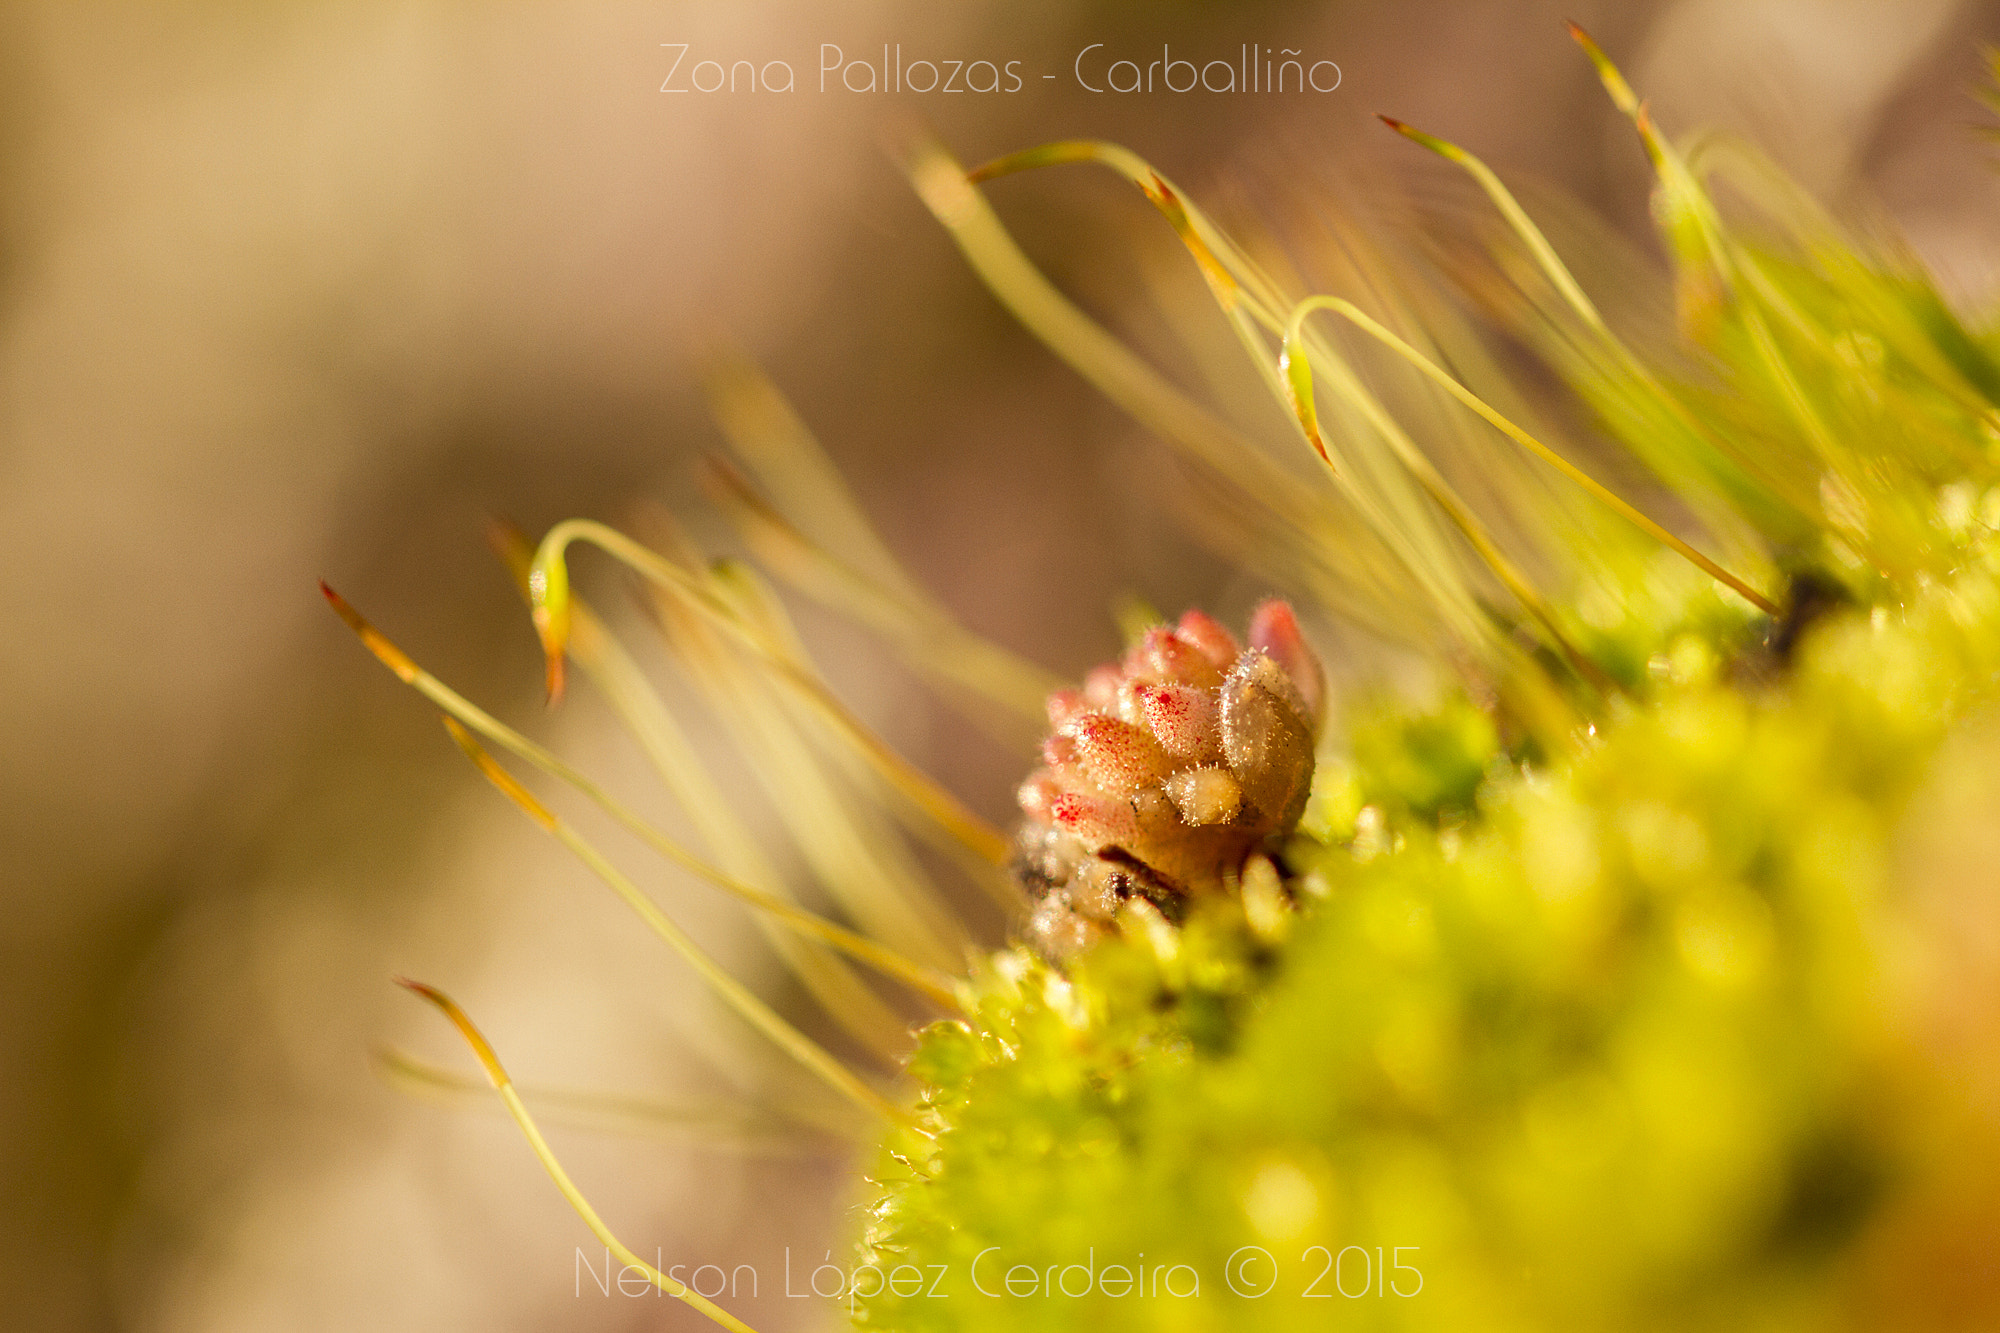 Canon EOS 7D sample photo. Zona pallozas 29 photography